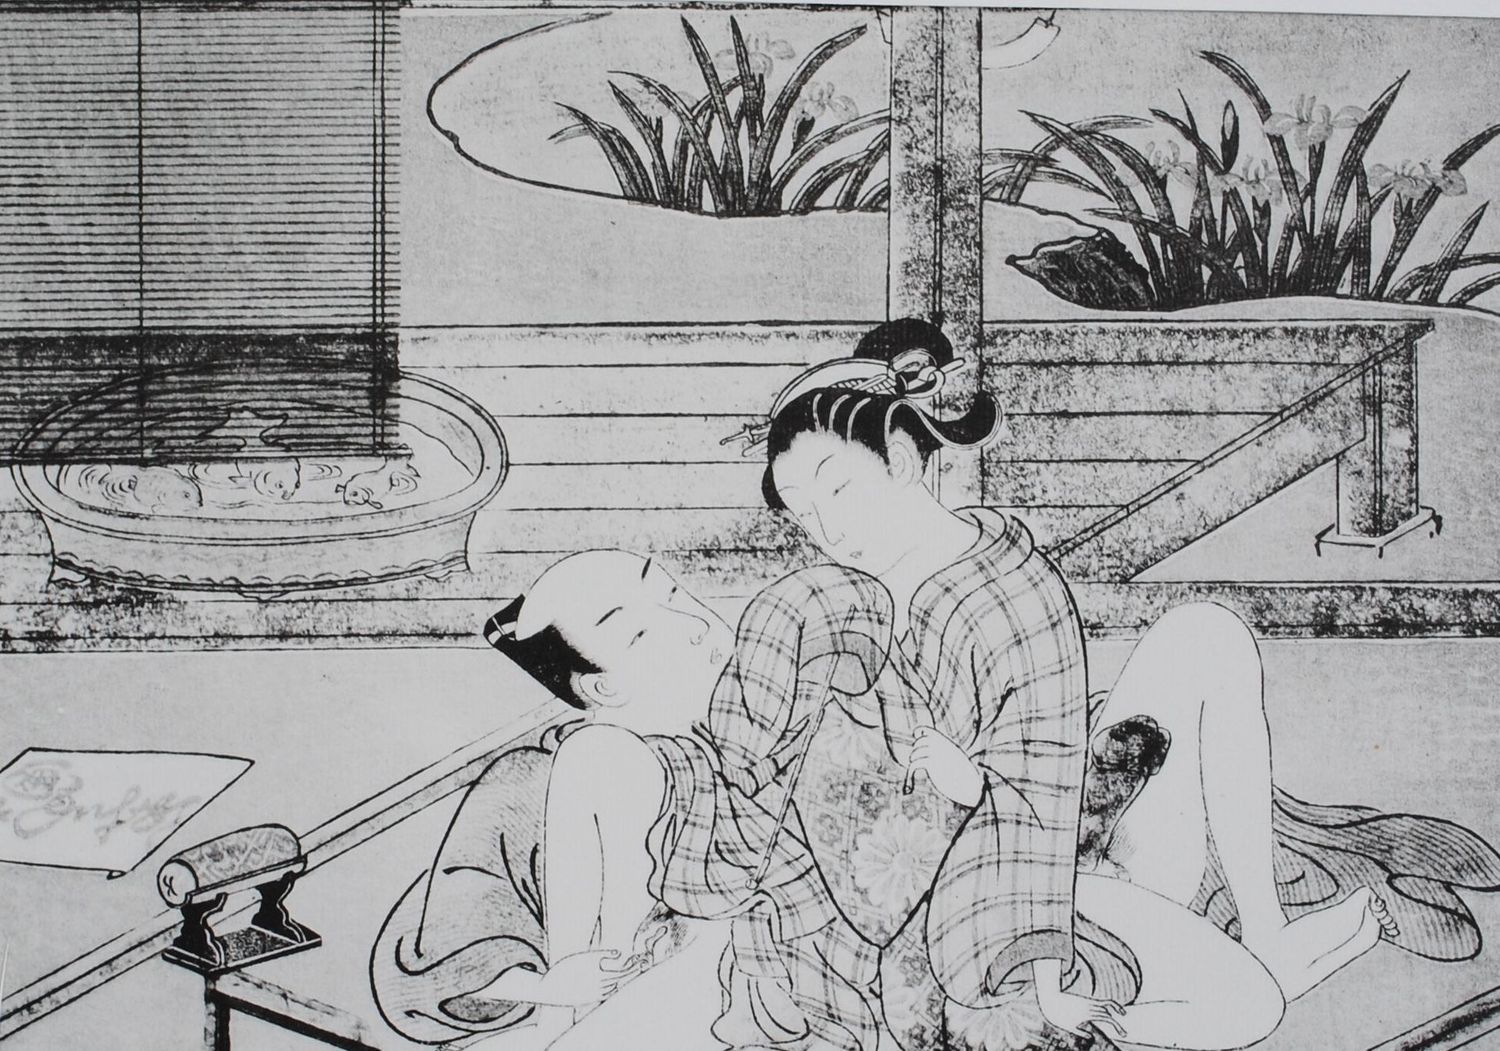 Suzuki HARUNOBU Suzuki HARUNOBU (nach) (1725-1770)
Die beiden Liebenden

Erotisc&hellip;